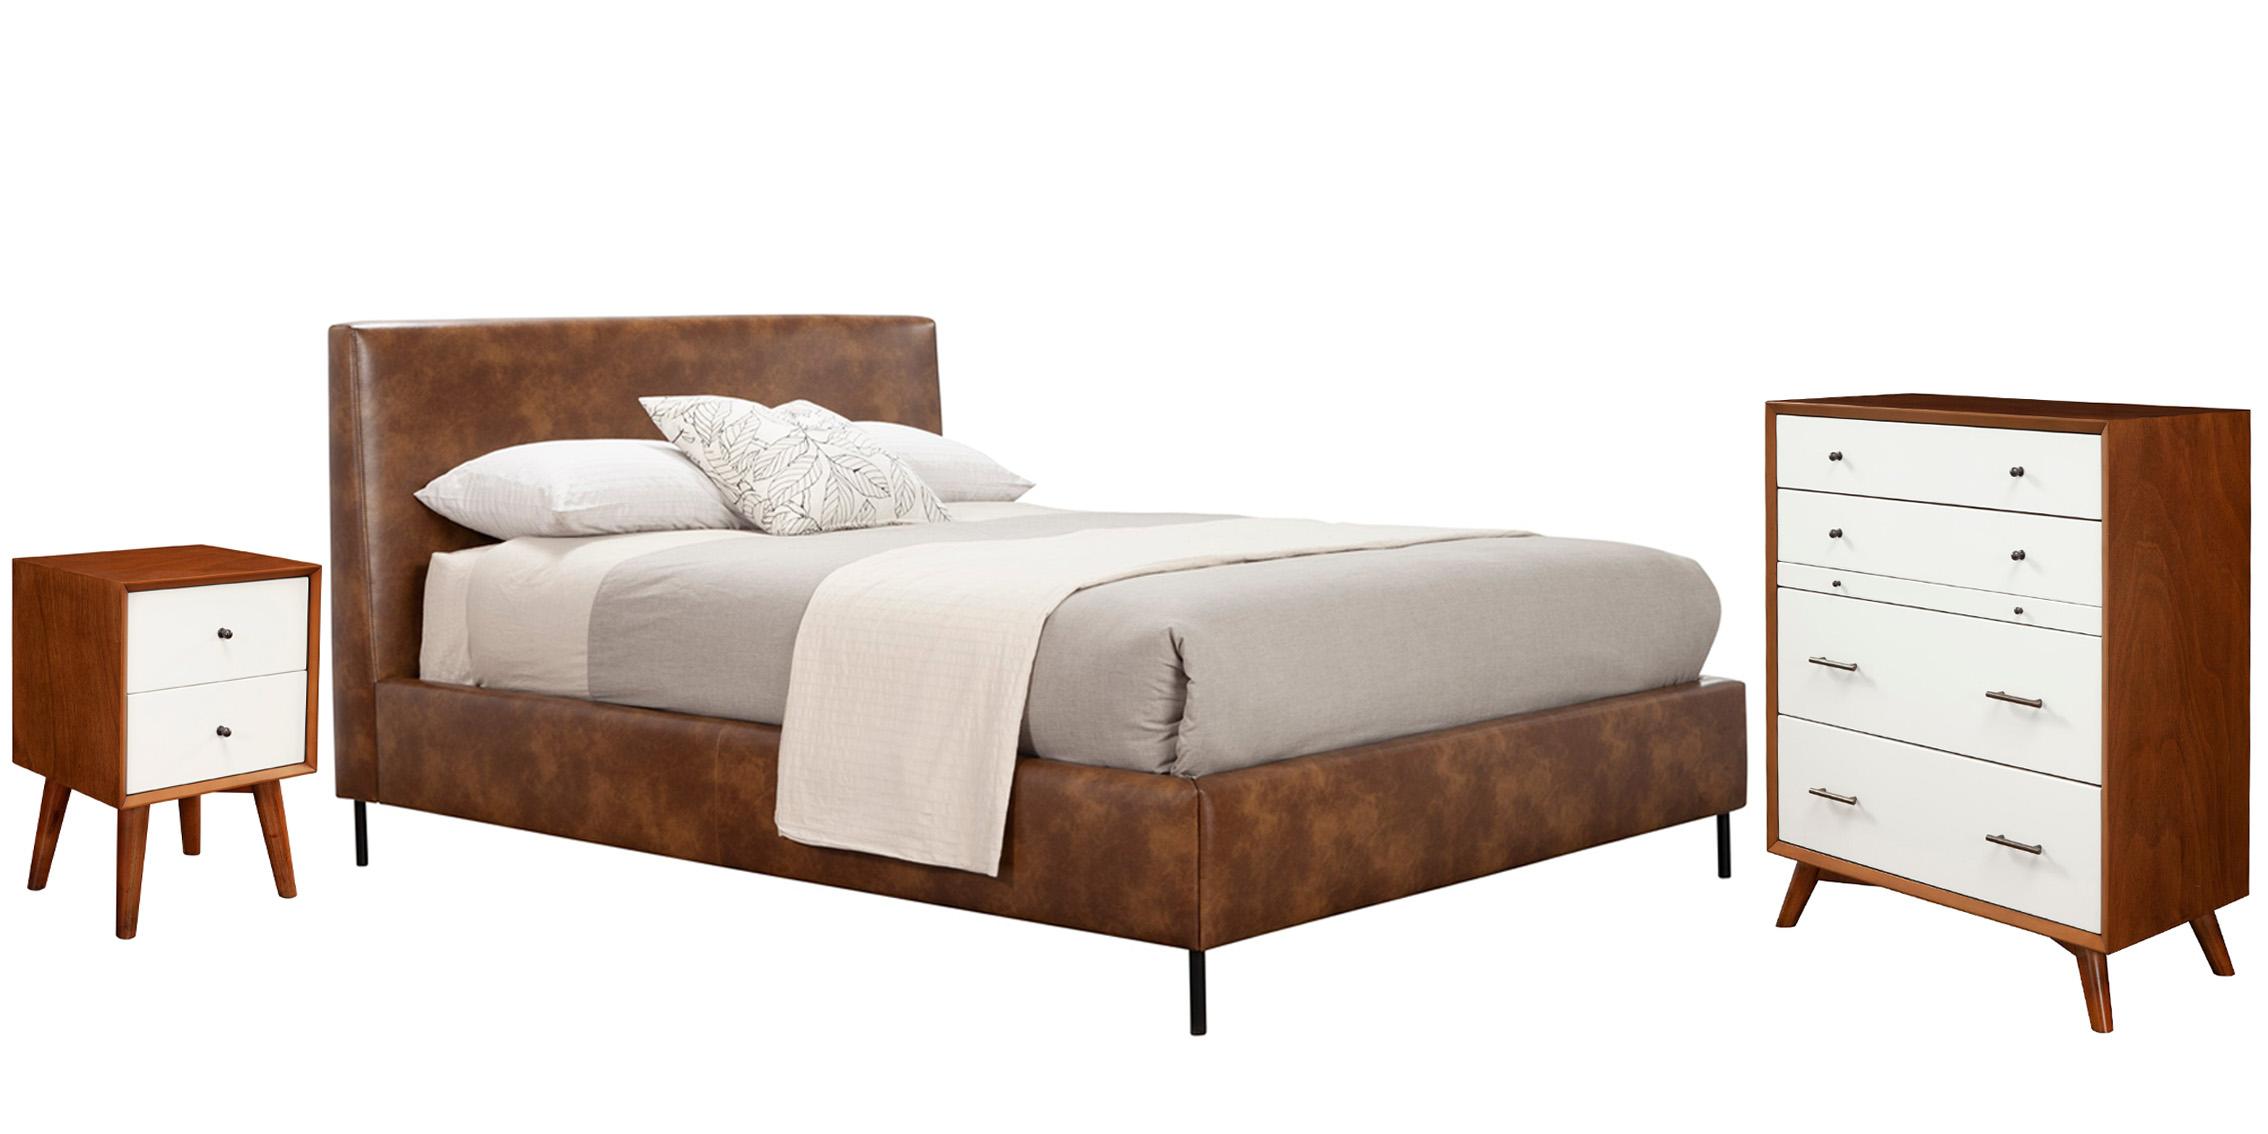 Modern, Rustic Platform Bedroom Set SOPHIA/FLYNN 6902CK-BRN-Set-3 in Brown Faux Leather